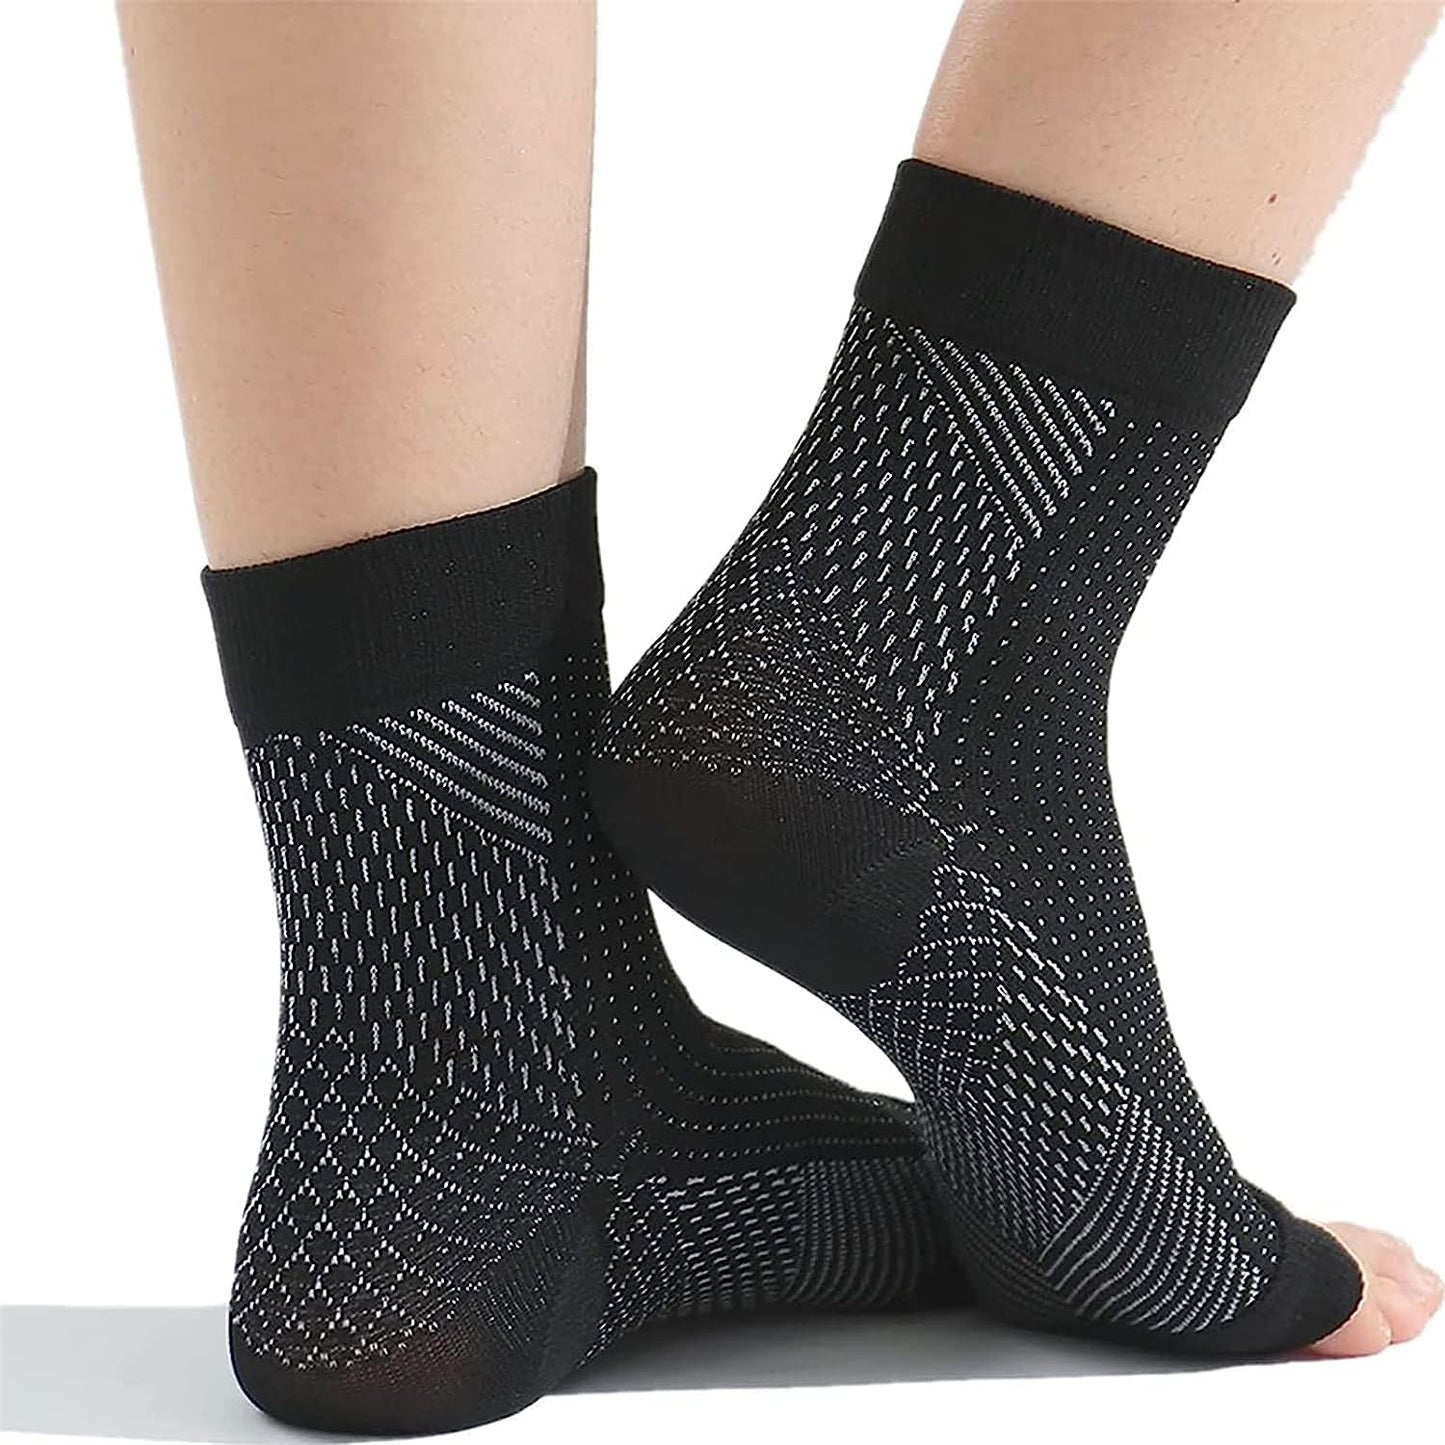 Schmerzlindernde Socken, beruhigende Kompressionsstrümpfe gegen Schmerzen